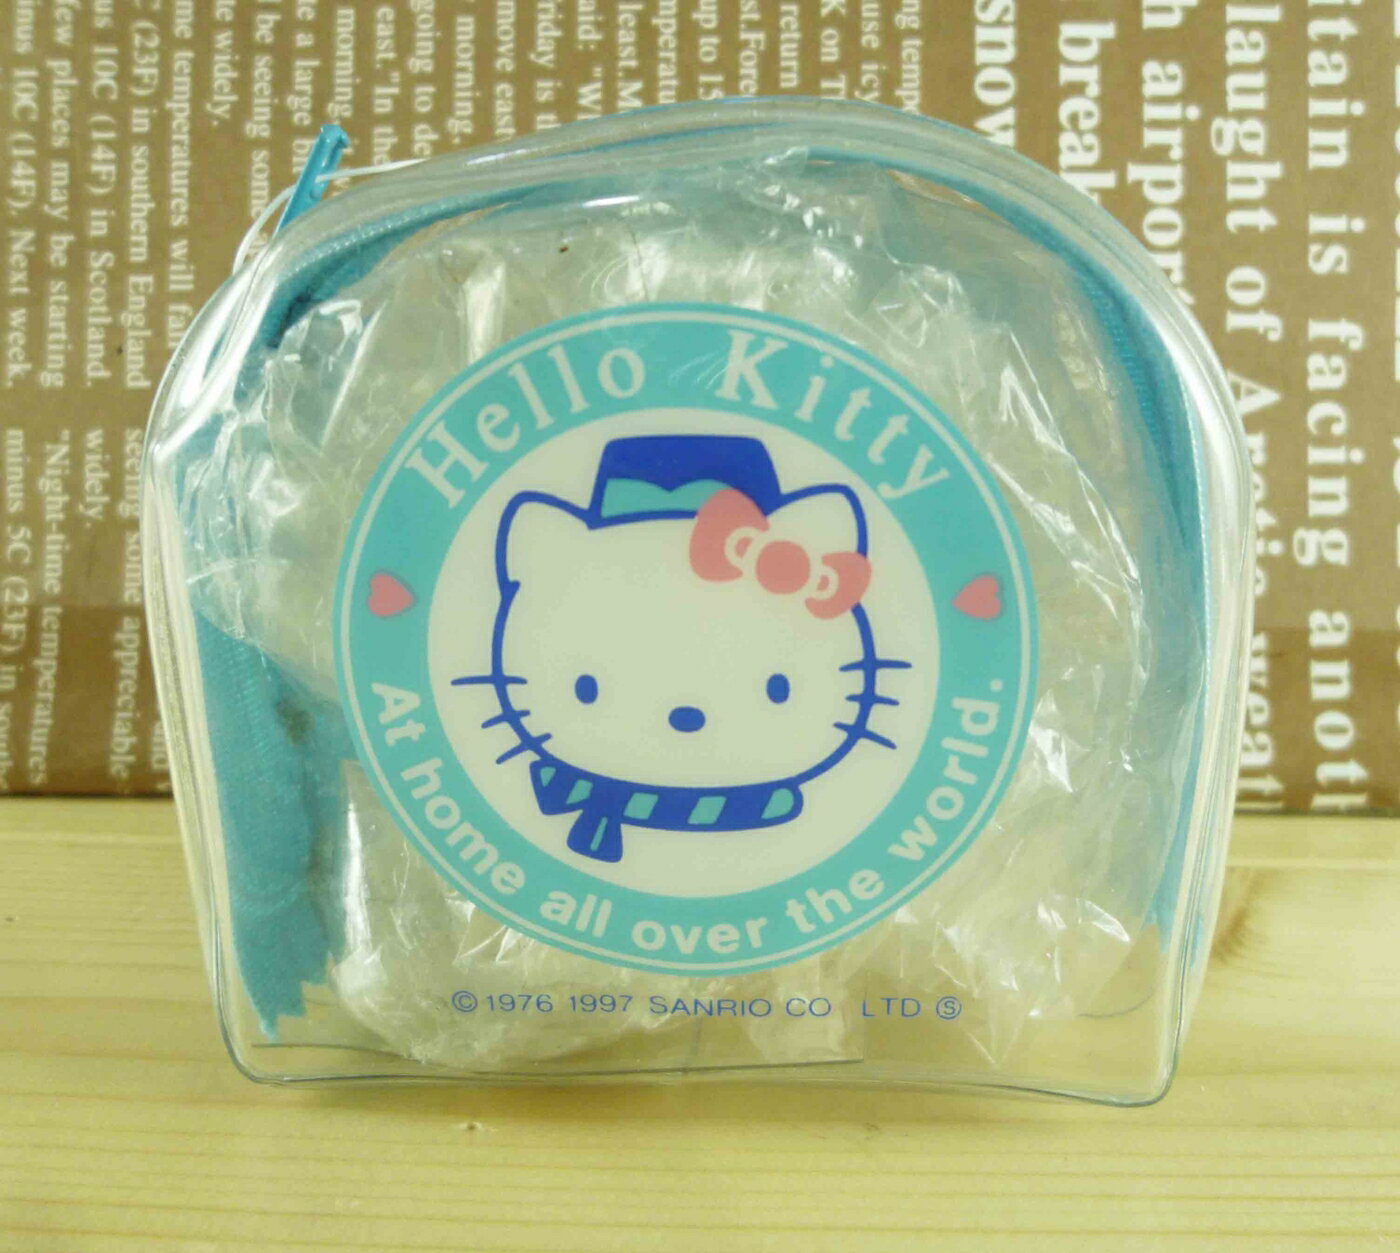 【震撼精品百貨】Hello Kitty 凱蒂貓-凱蒂貓零錢包-藍護士 震撼日式精品百貨